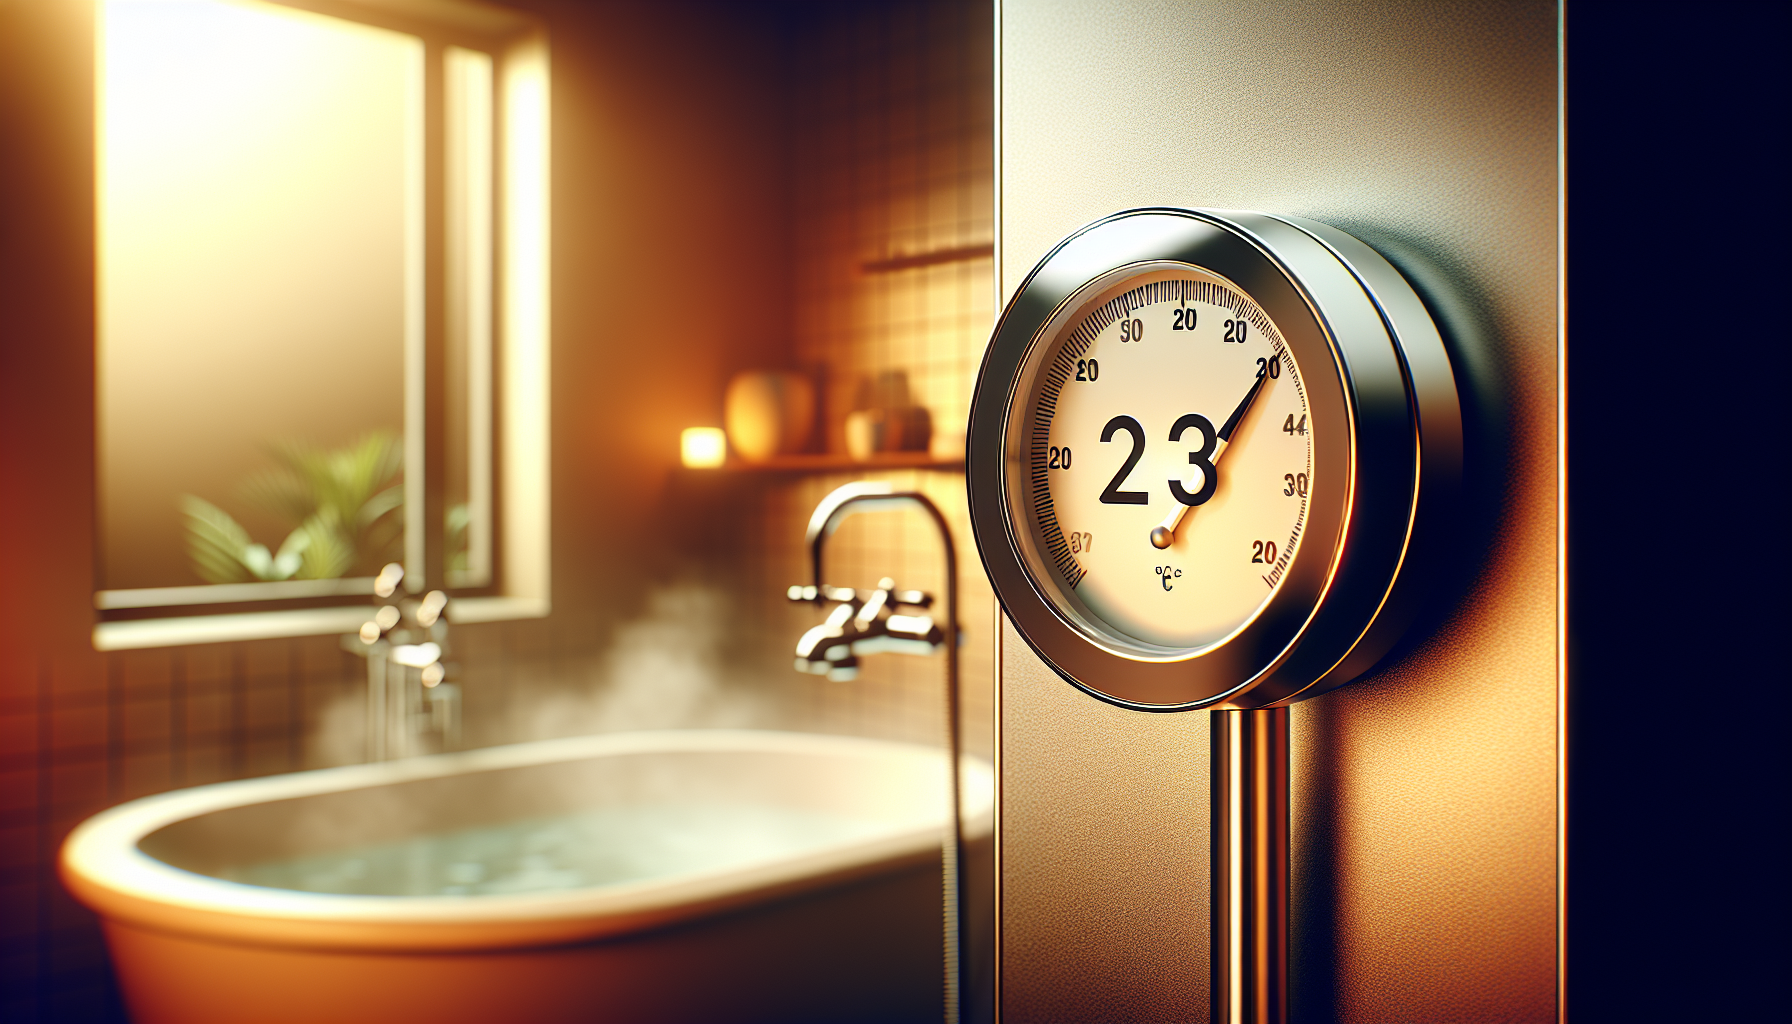 Eine Illustration eines Thermometers mit der idealen Badezimmertemperatur von 23 Grad Celsius.